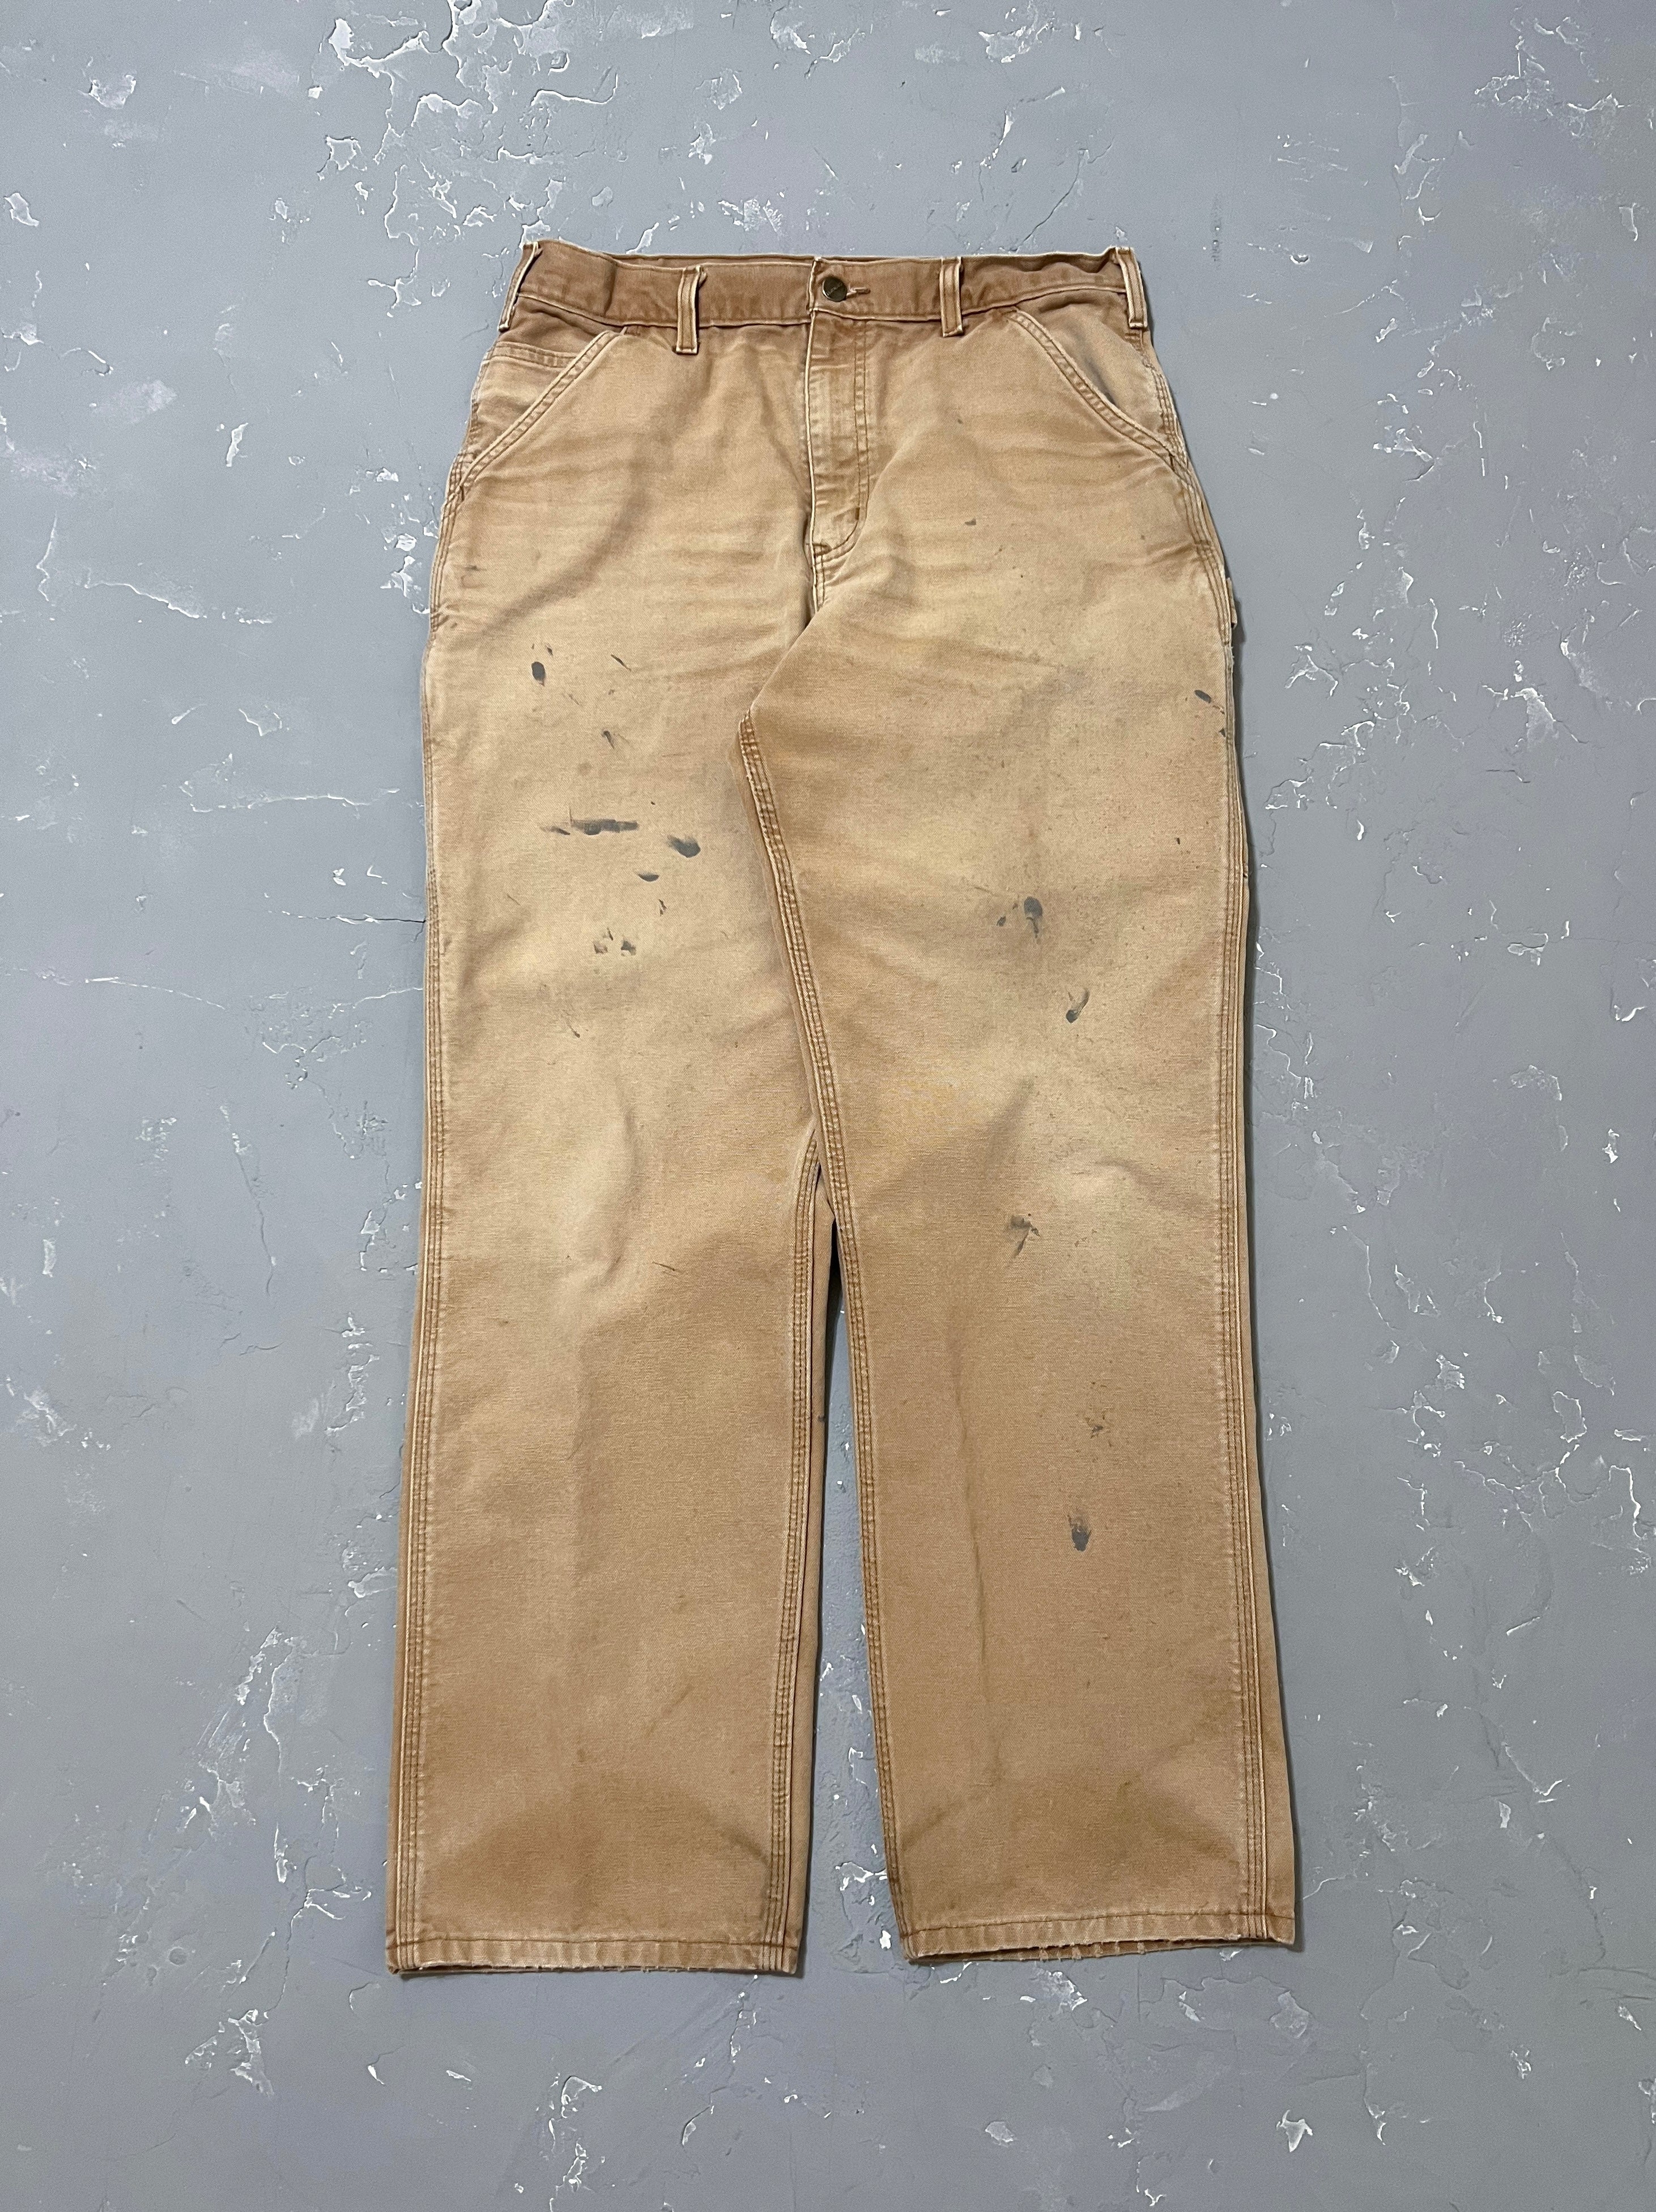 Carhartt Painted Sun Bleached Carpenter Pants [33 x 32]